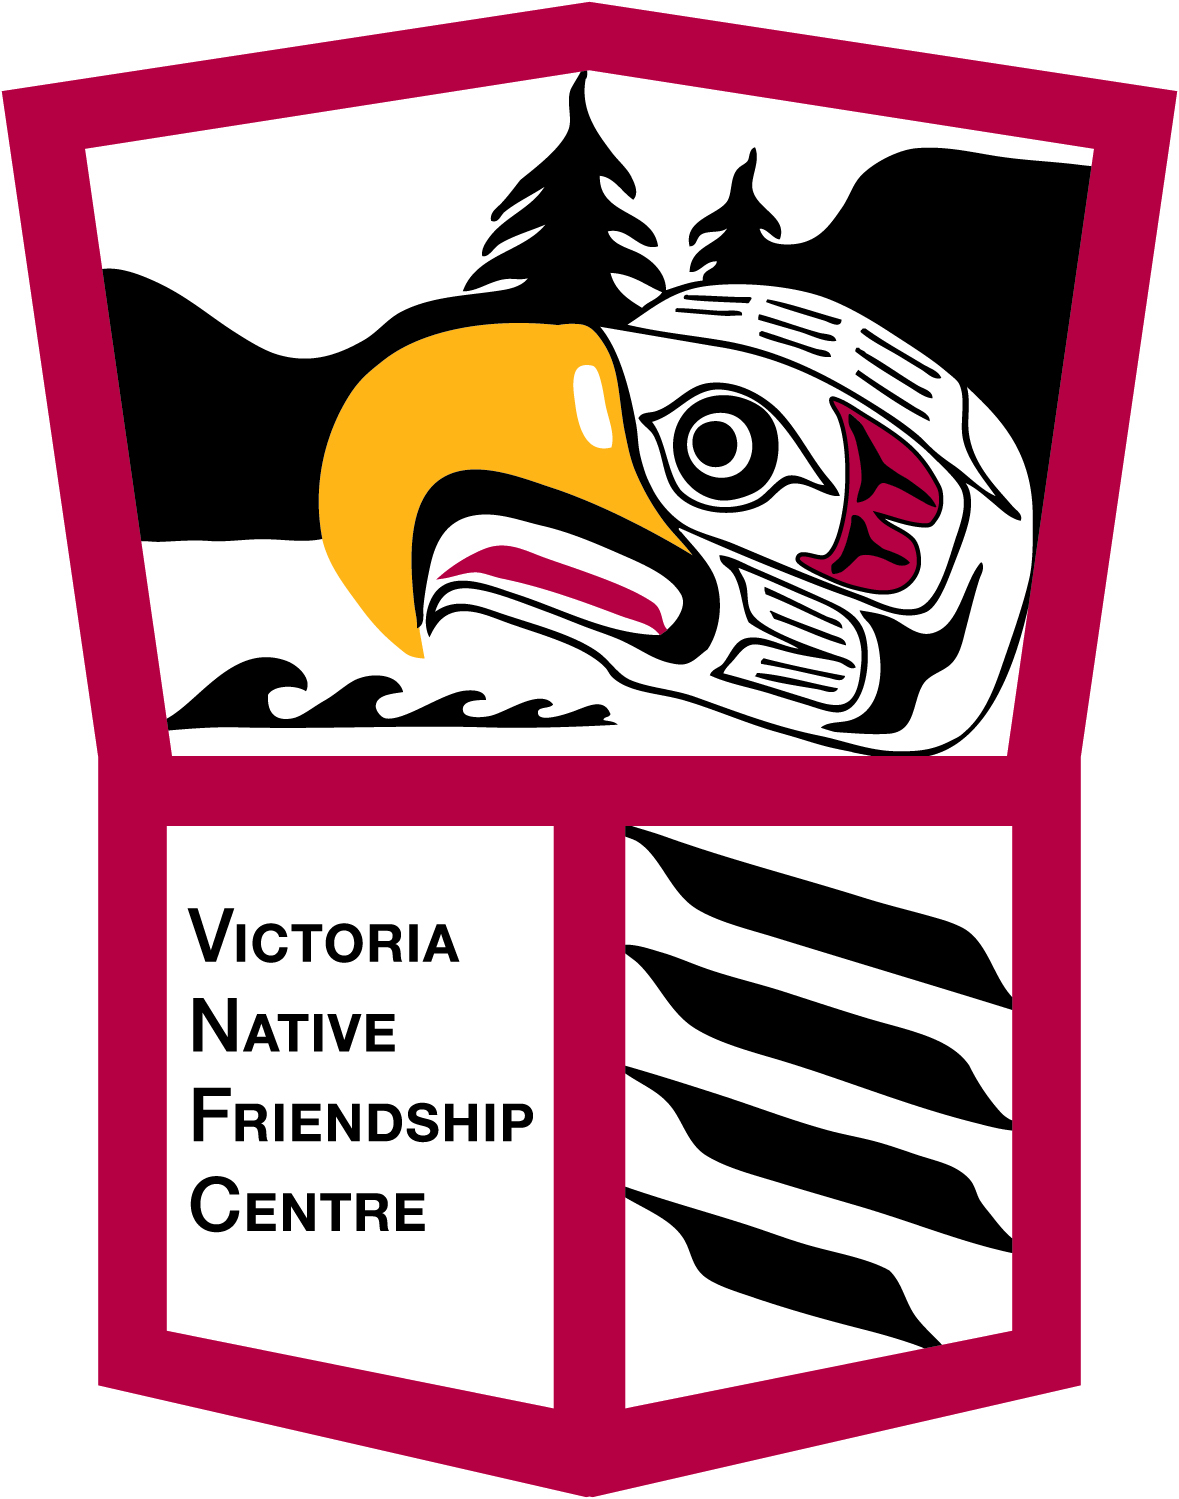 Victoria Native Friendship Centre logo